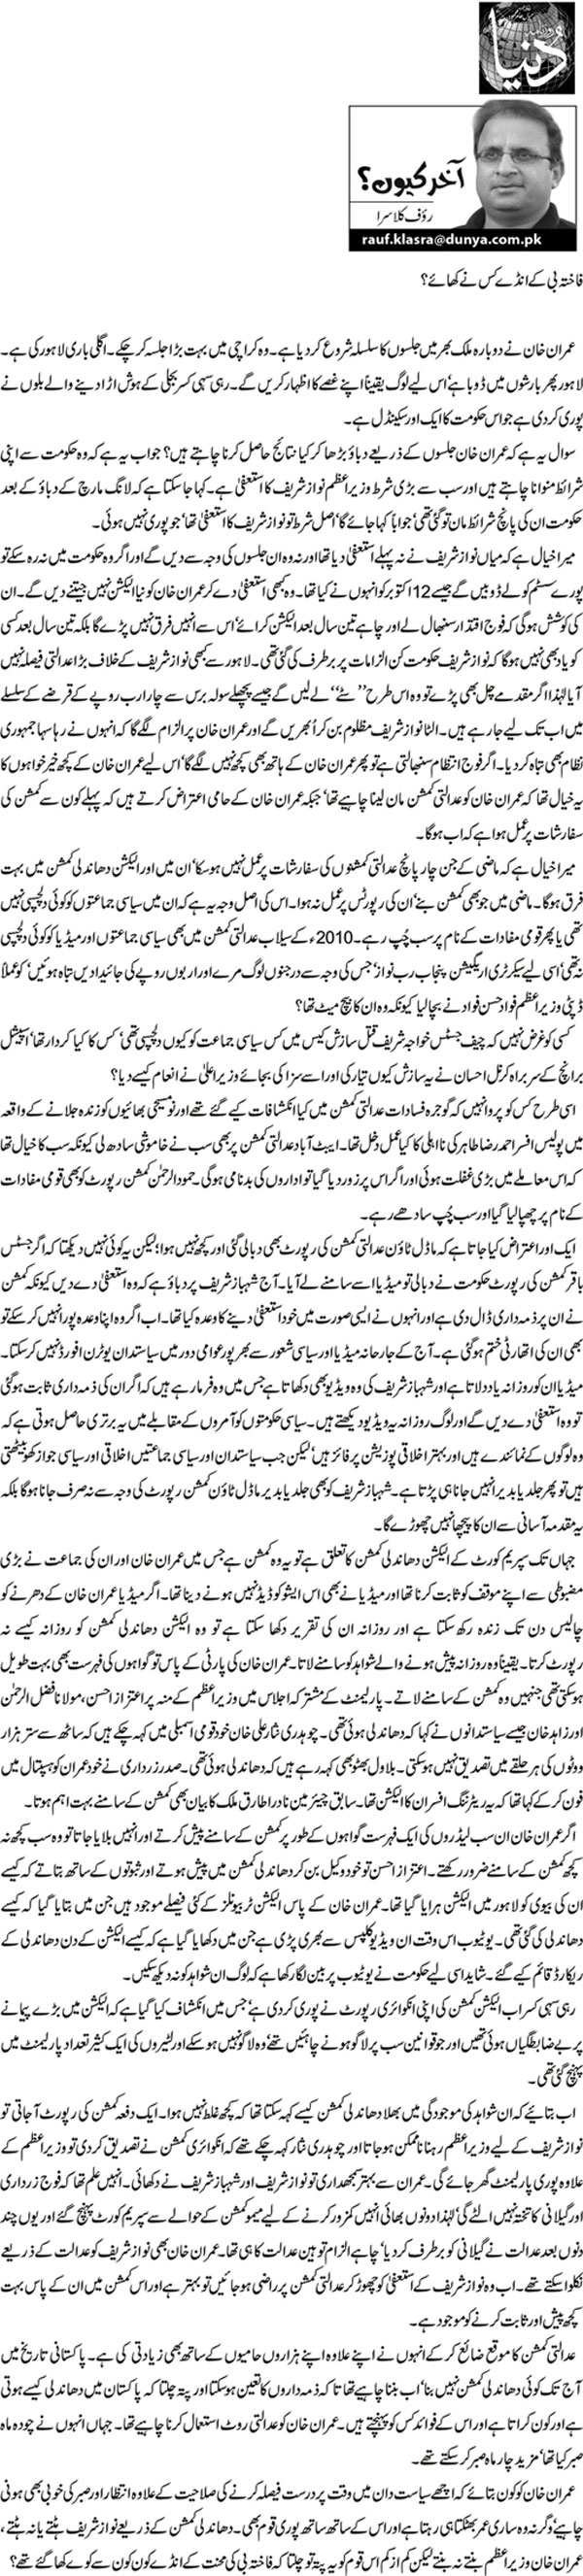 Minhaj-ul-Quran  Print Media Coverage Daily-Dunya